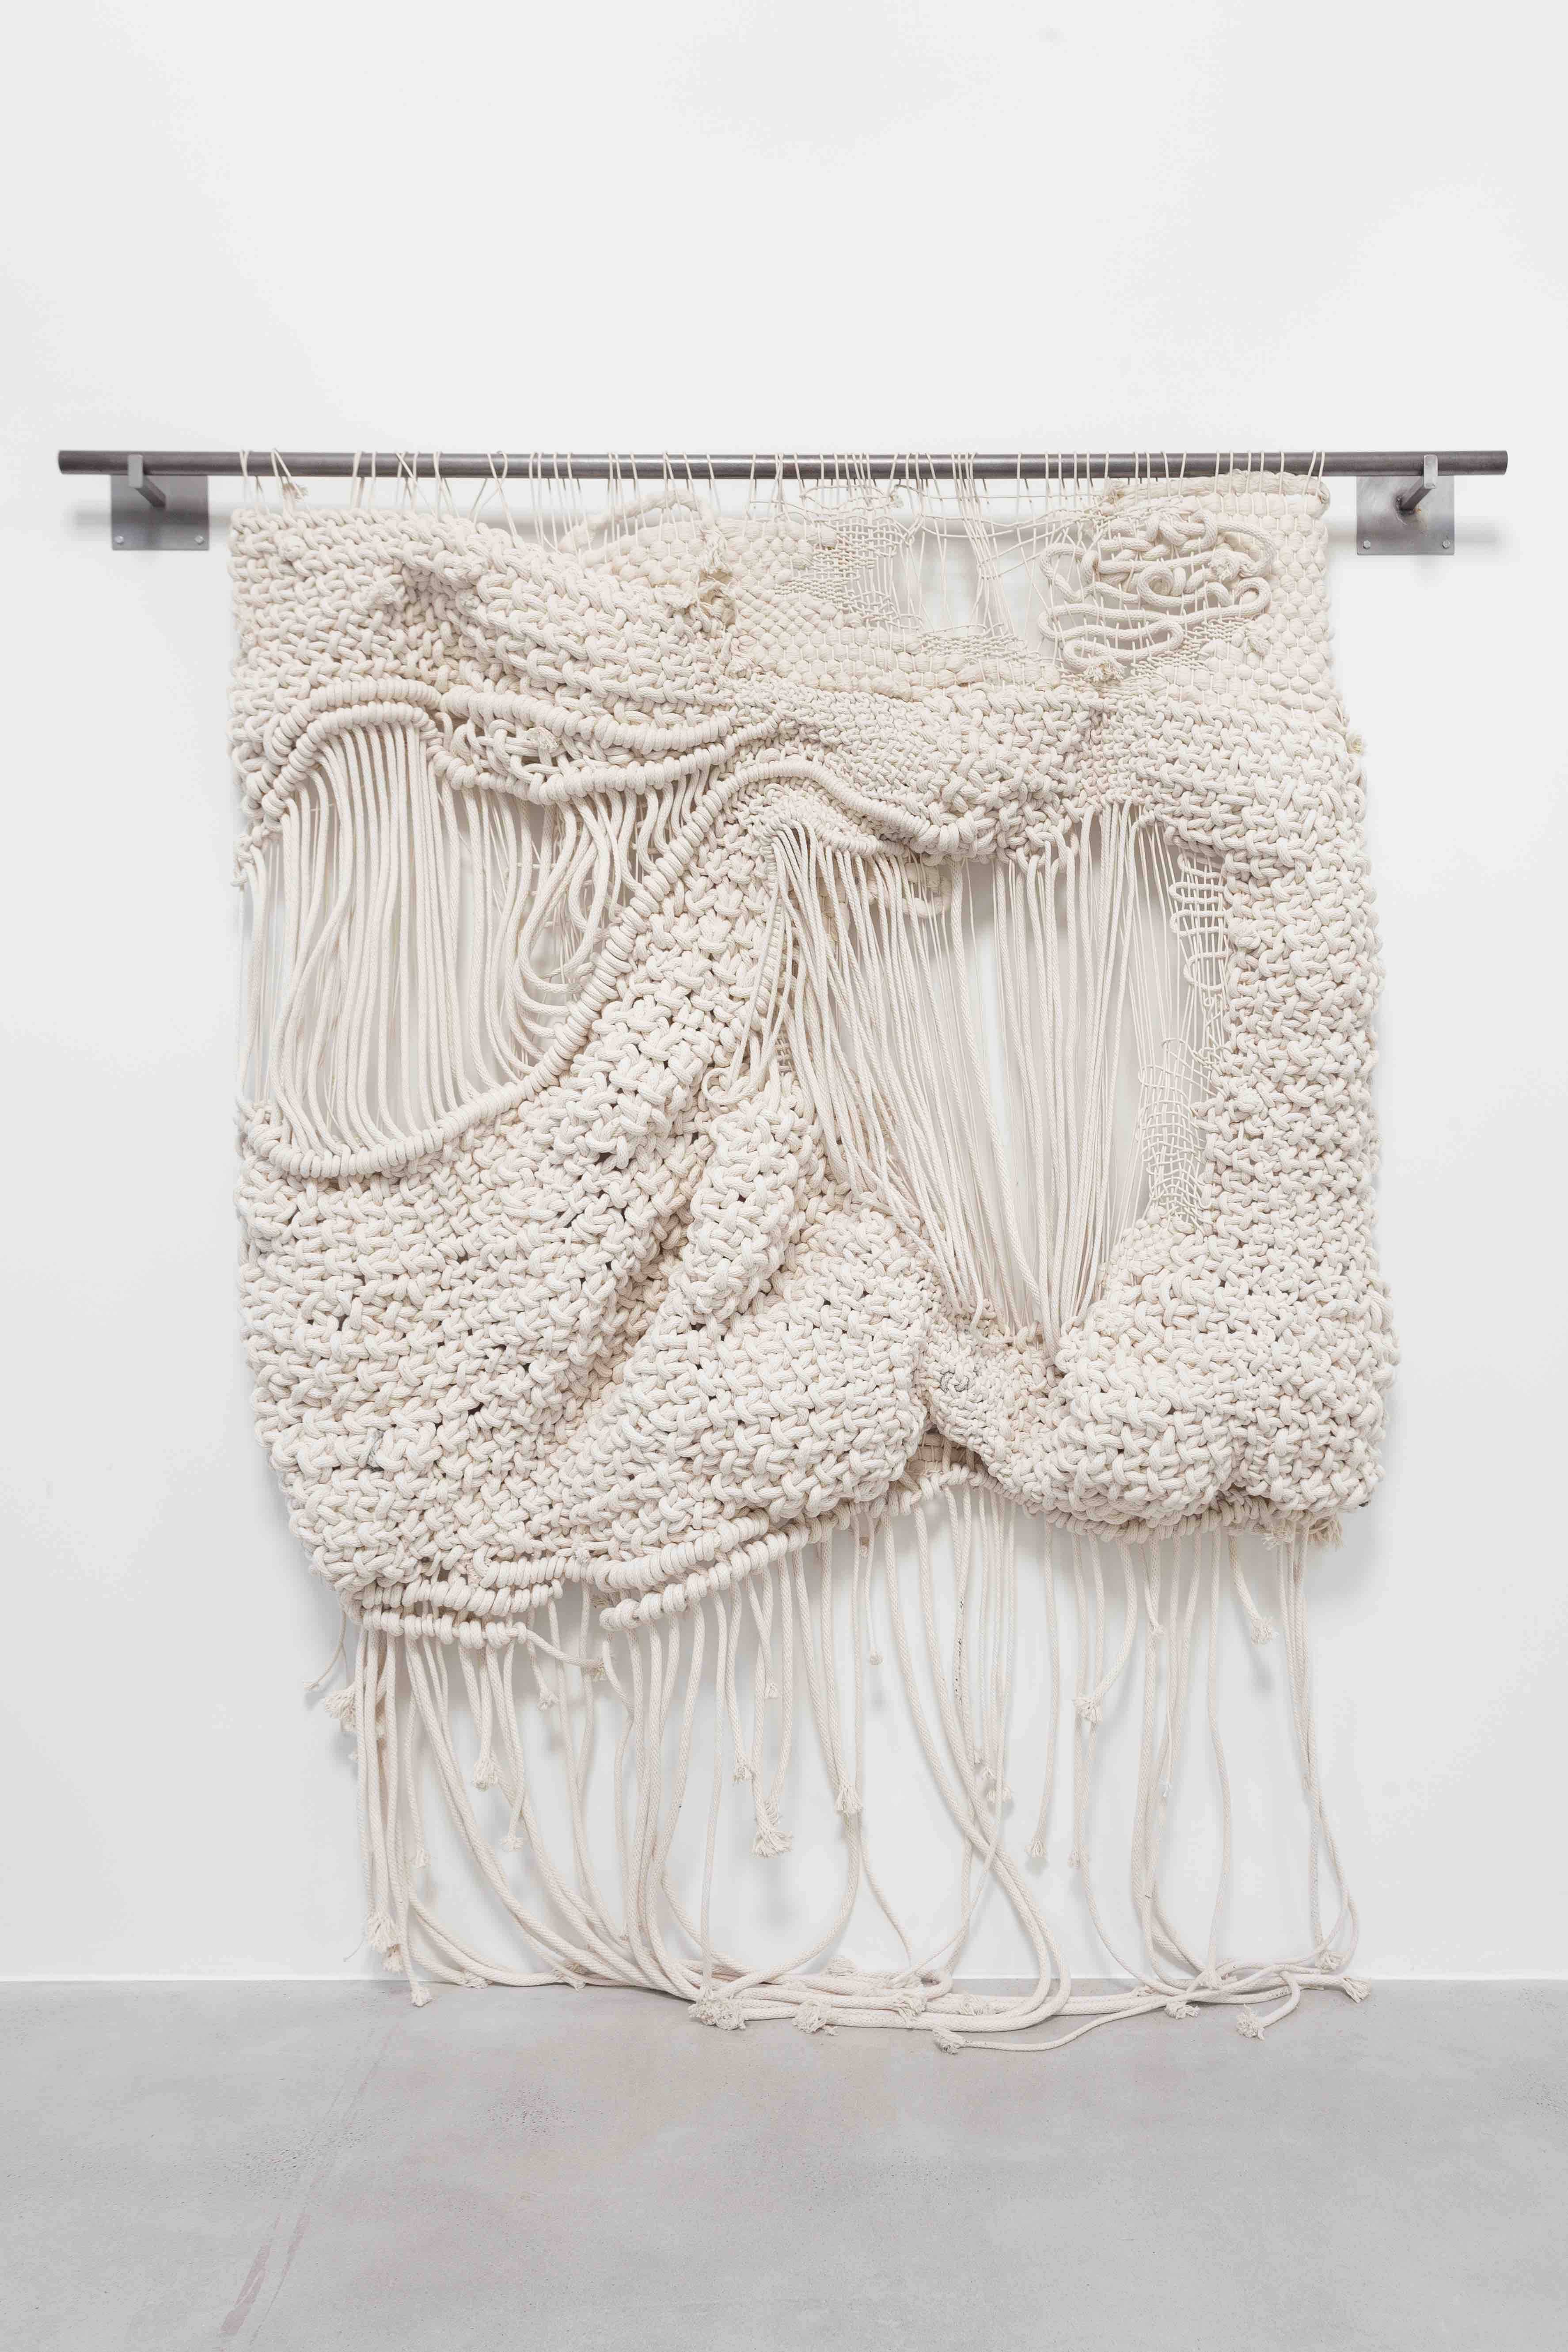 Le travail de Jacqueline Surdell est représenté par la galerie Spazio Nobile (Bruxelles). Cette grande tapisserie blanche a récemment été acquise par la Fondation Thalie. 
Untitled IIV: Gully in the Mountains - Materials: braided cotton cord, steel rode - Dimensions :152 x 168 x 25 cm - Year: 2020